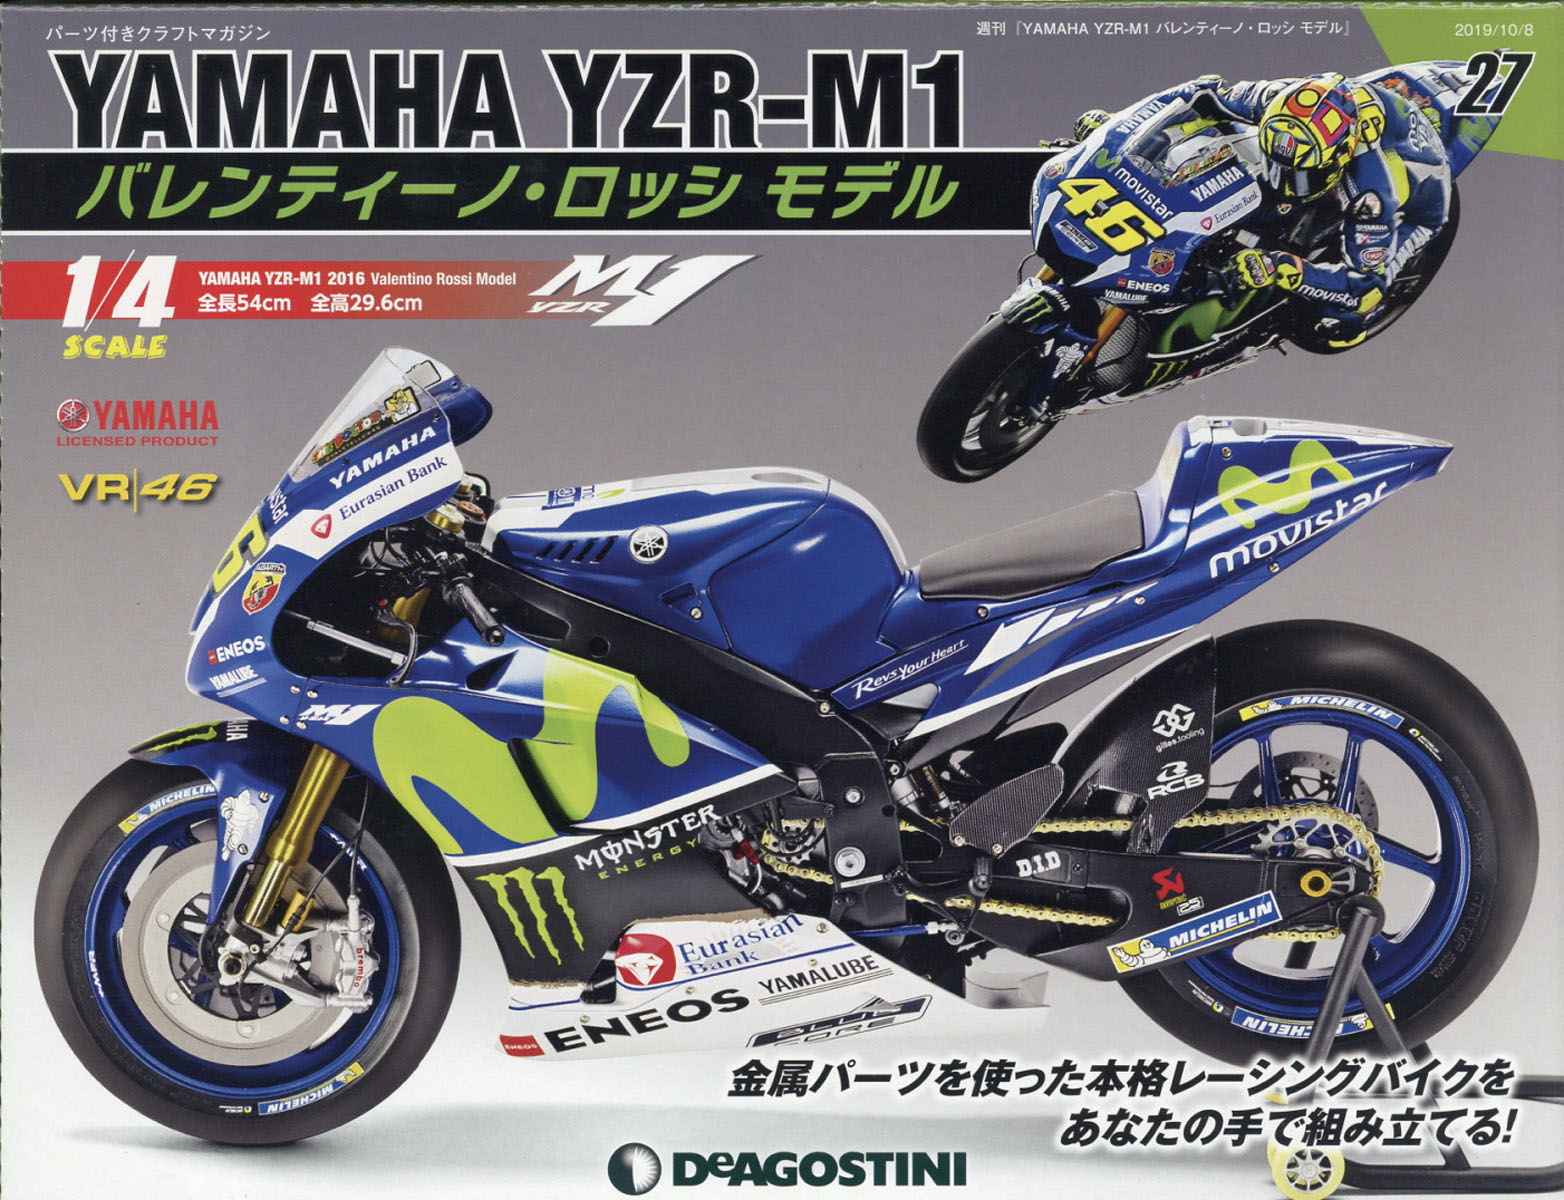 週刊 YAMAHA YZR-1 バレンティーノ・ロッシ モデル 2019年 10/8号 [雑誌]